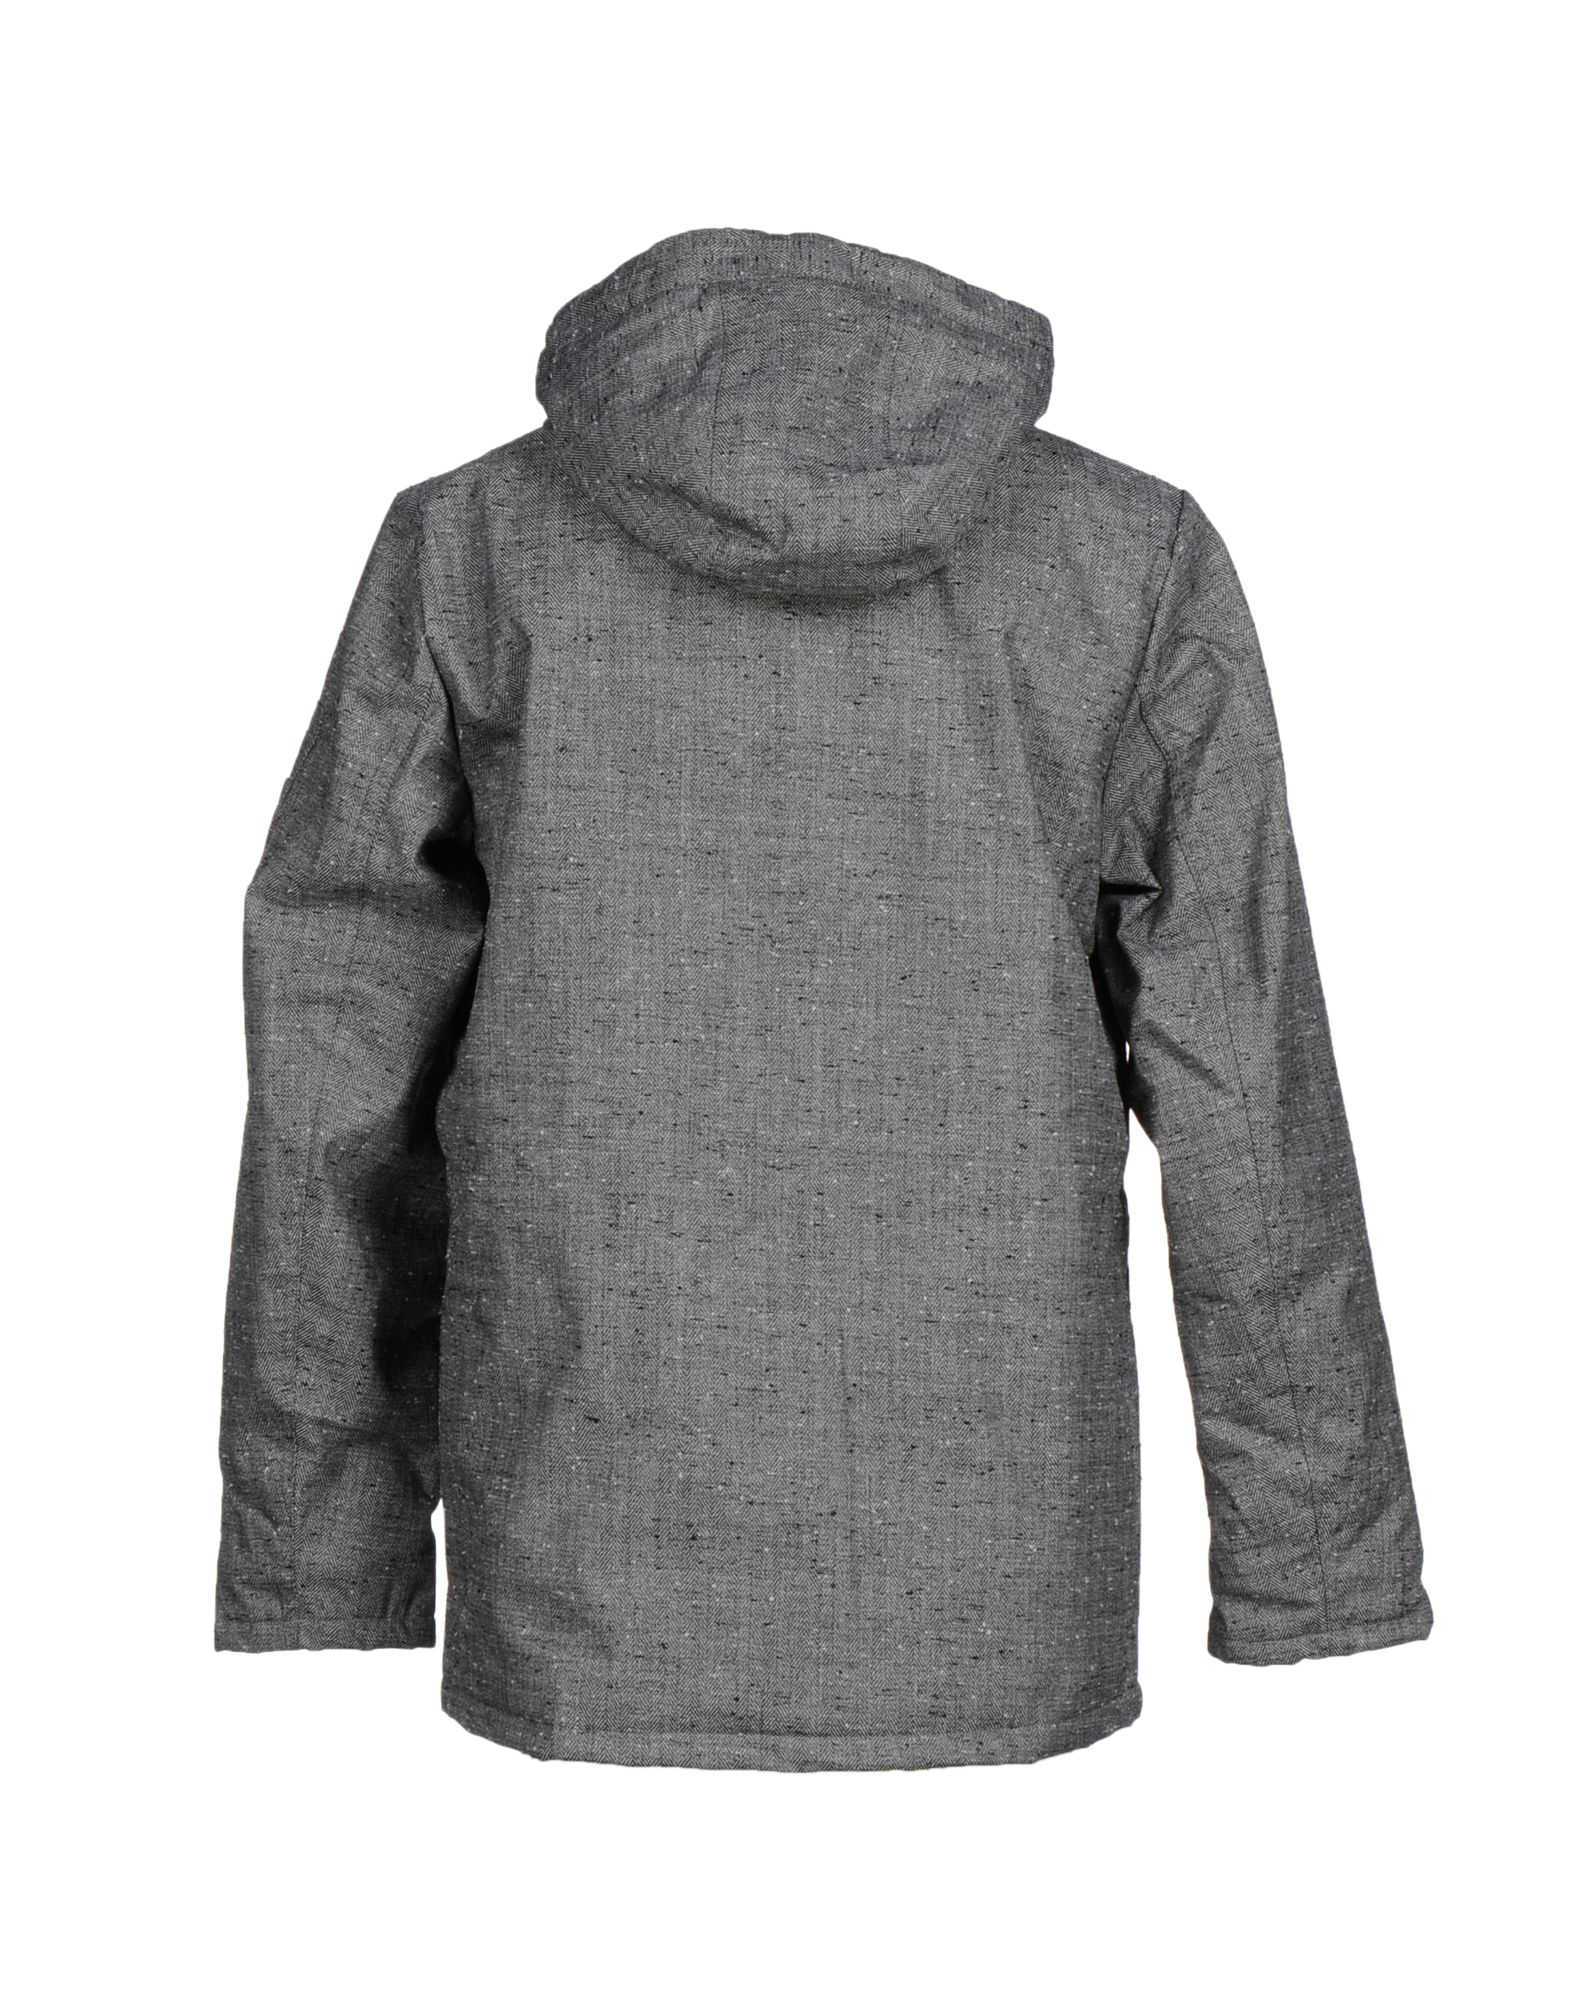 Lyst - Vans Jacket in Gray for Men